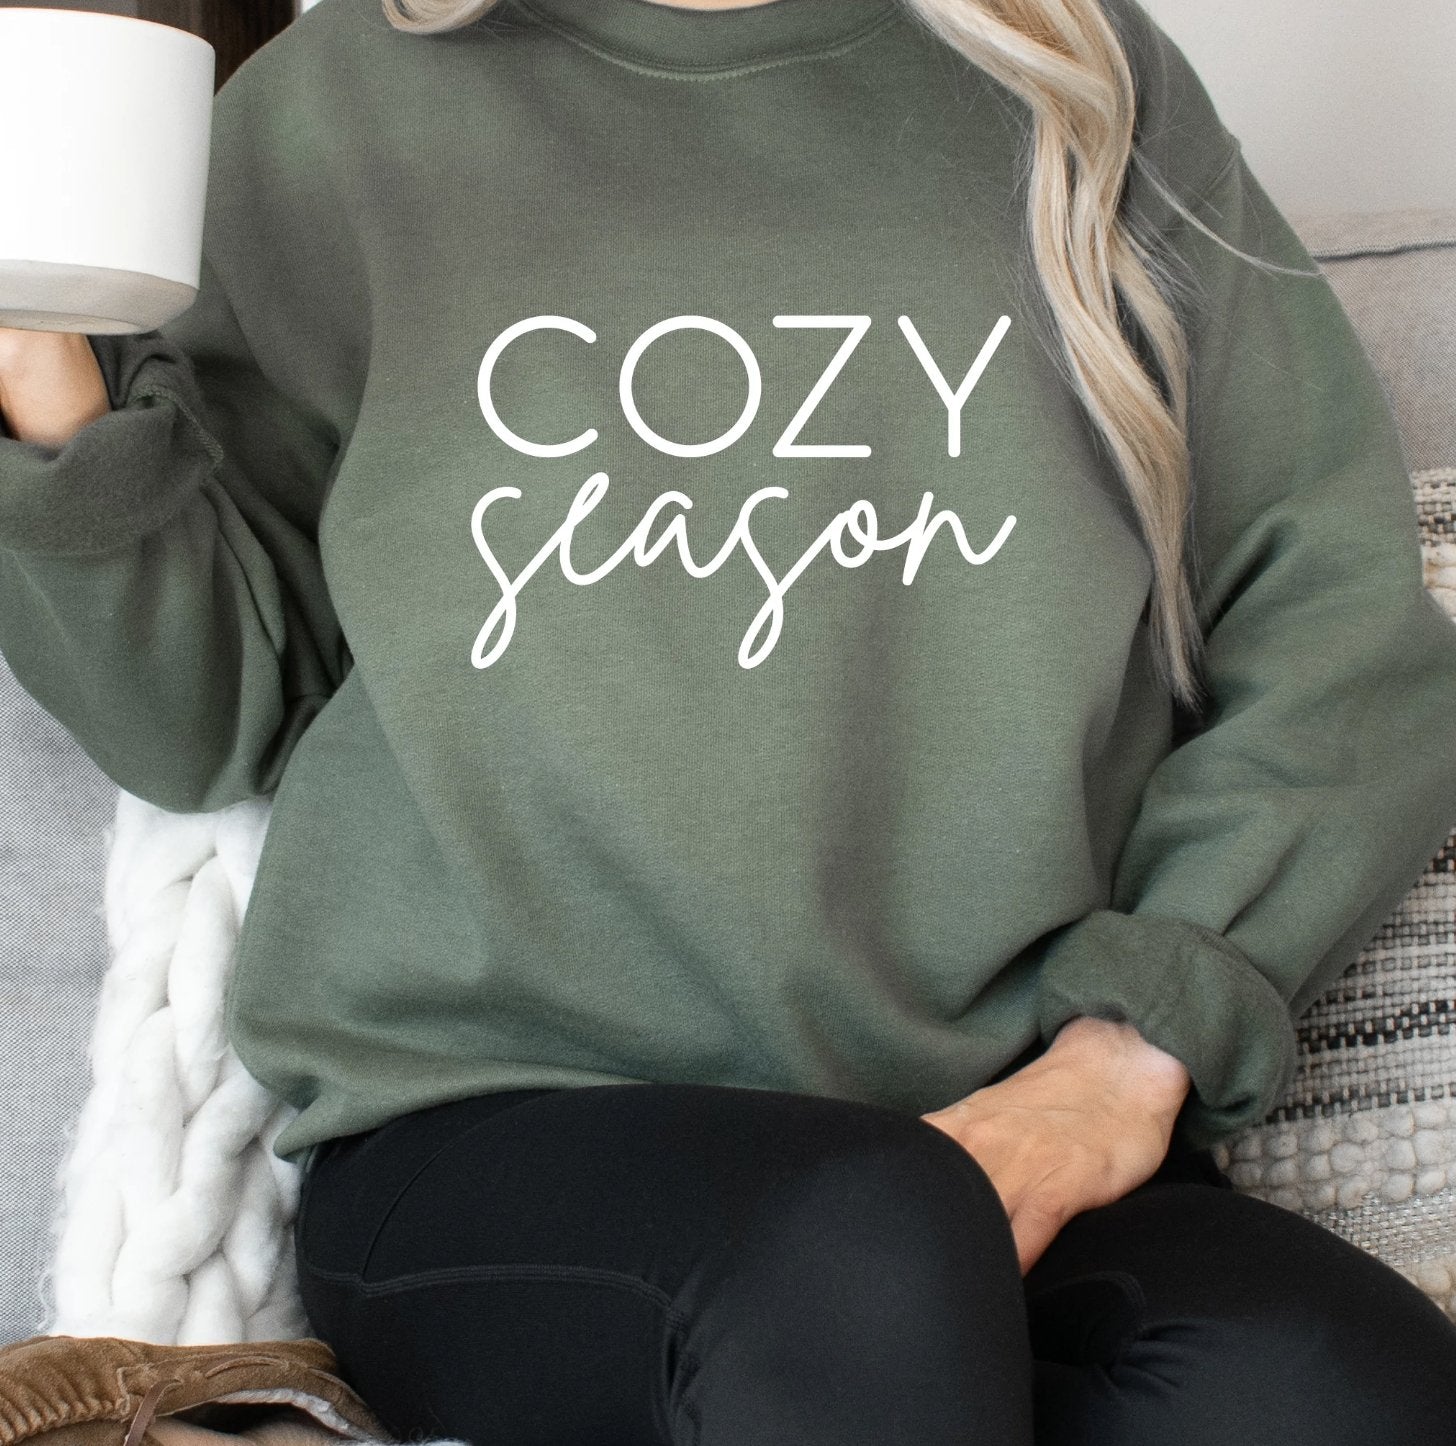 Women's Fashion - Women's Clothing - Tops & Tees - T-Shirts Cozy Season Sweatshirt